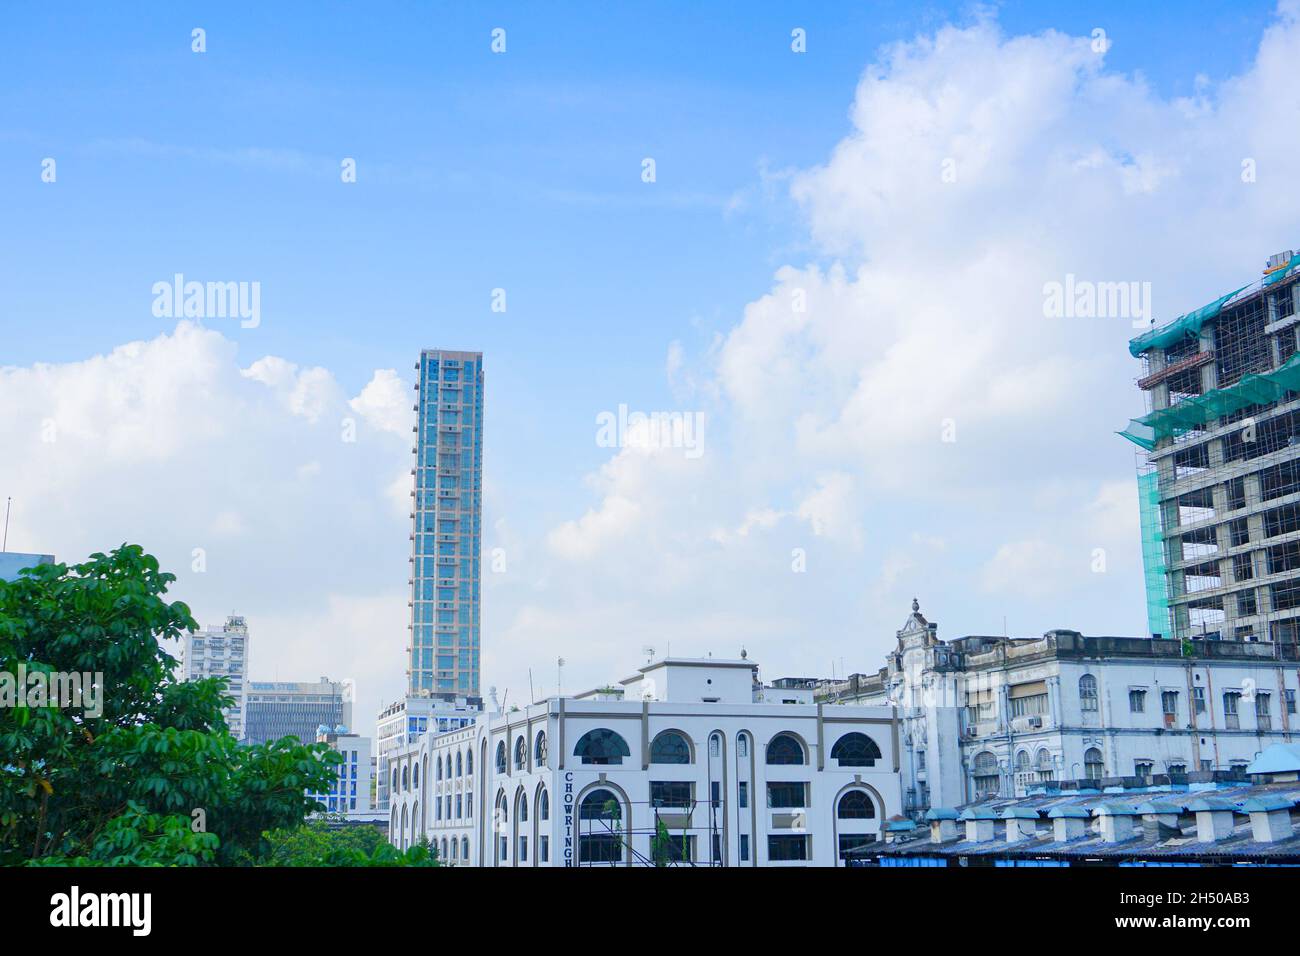 Kolkata, Bengala Occidentale, India - 20 Luglio 2019 : il 42, l'edificio più alto di Kolkata al 42° piano, da qui il nome. Edificio Iconinc di Kolkata. Foto Stock